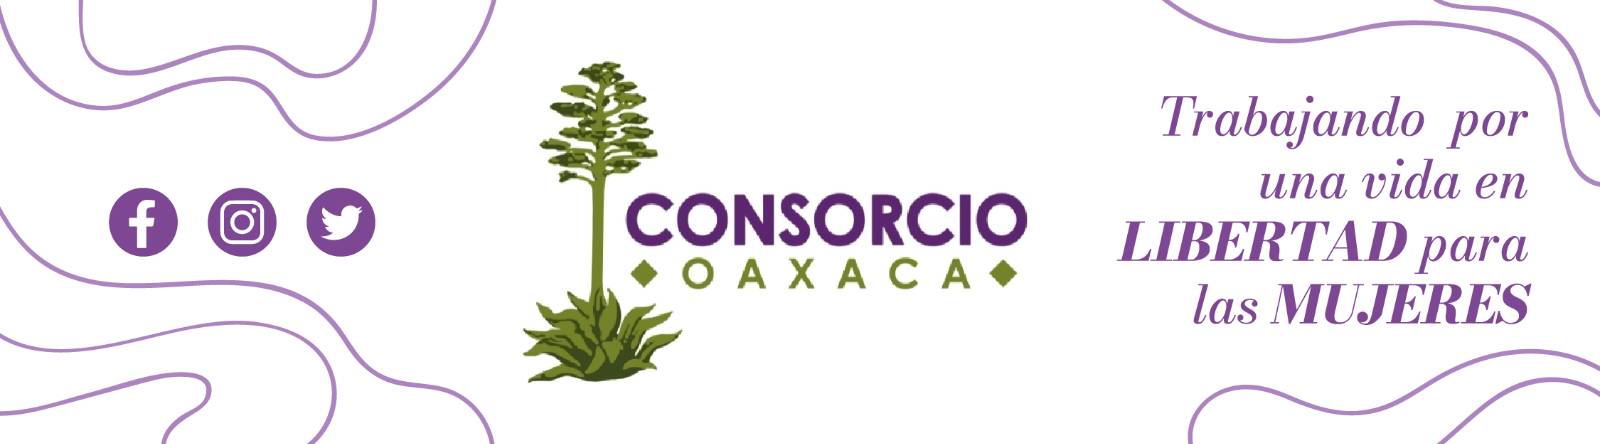 Consorcio Para el Diálogo Parlamentario y la Equidad Oaxaca